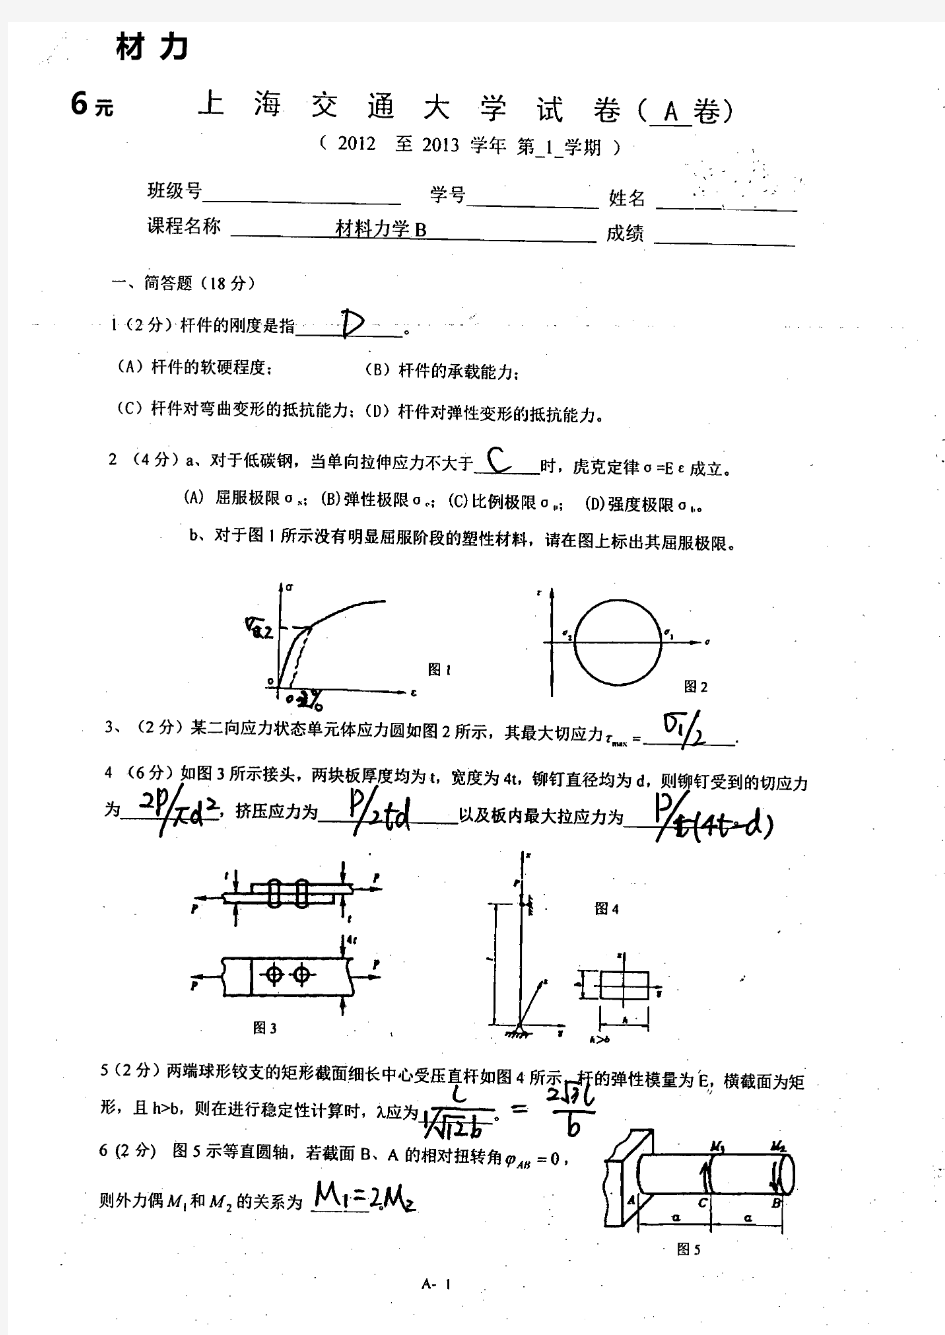 上海交大材料力学历年试题汇总(最新到2014)